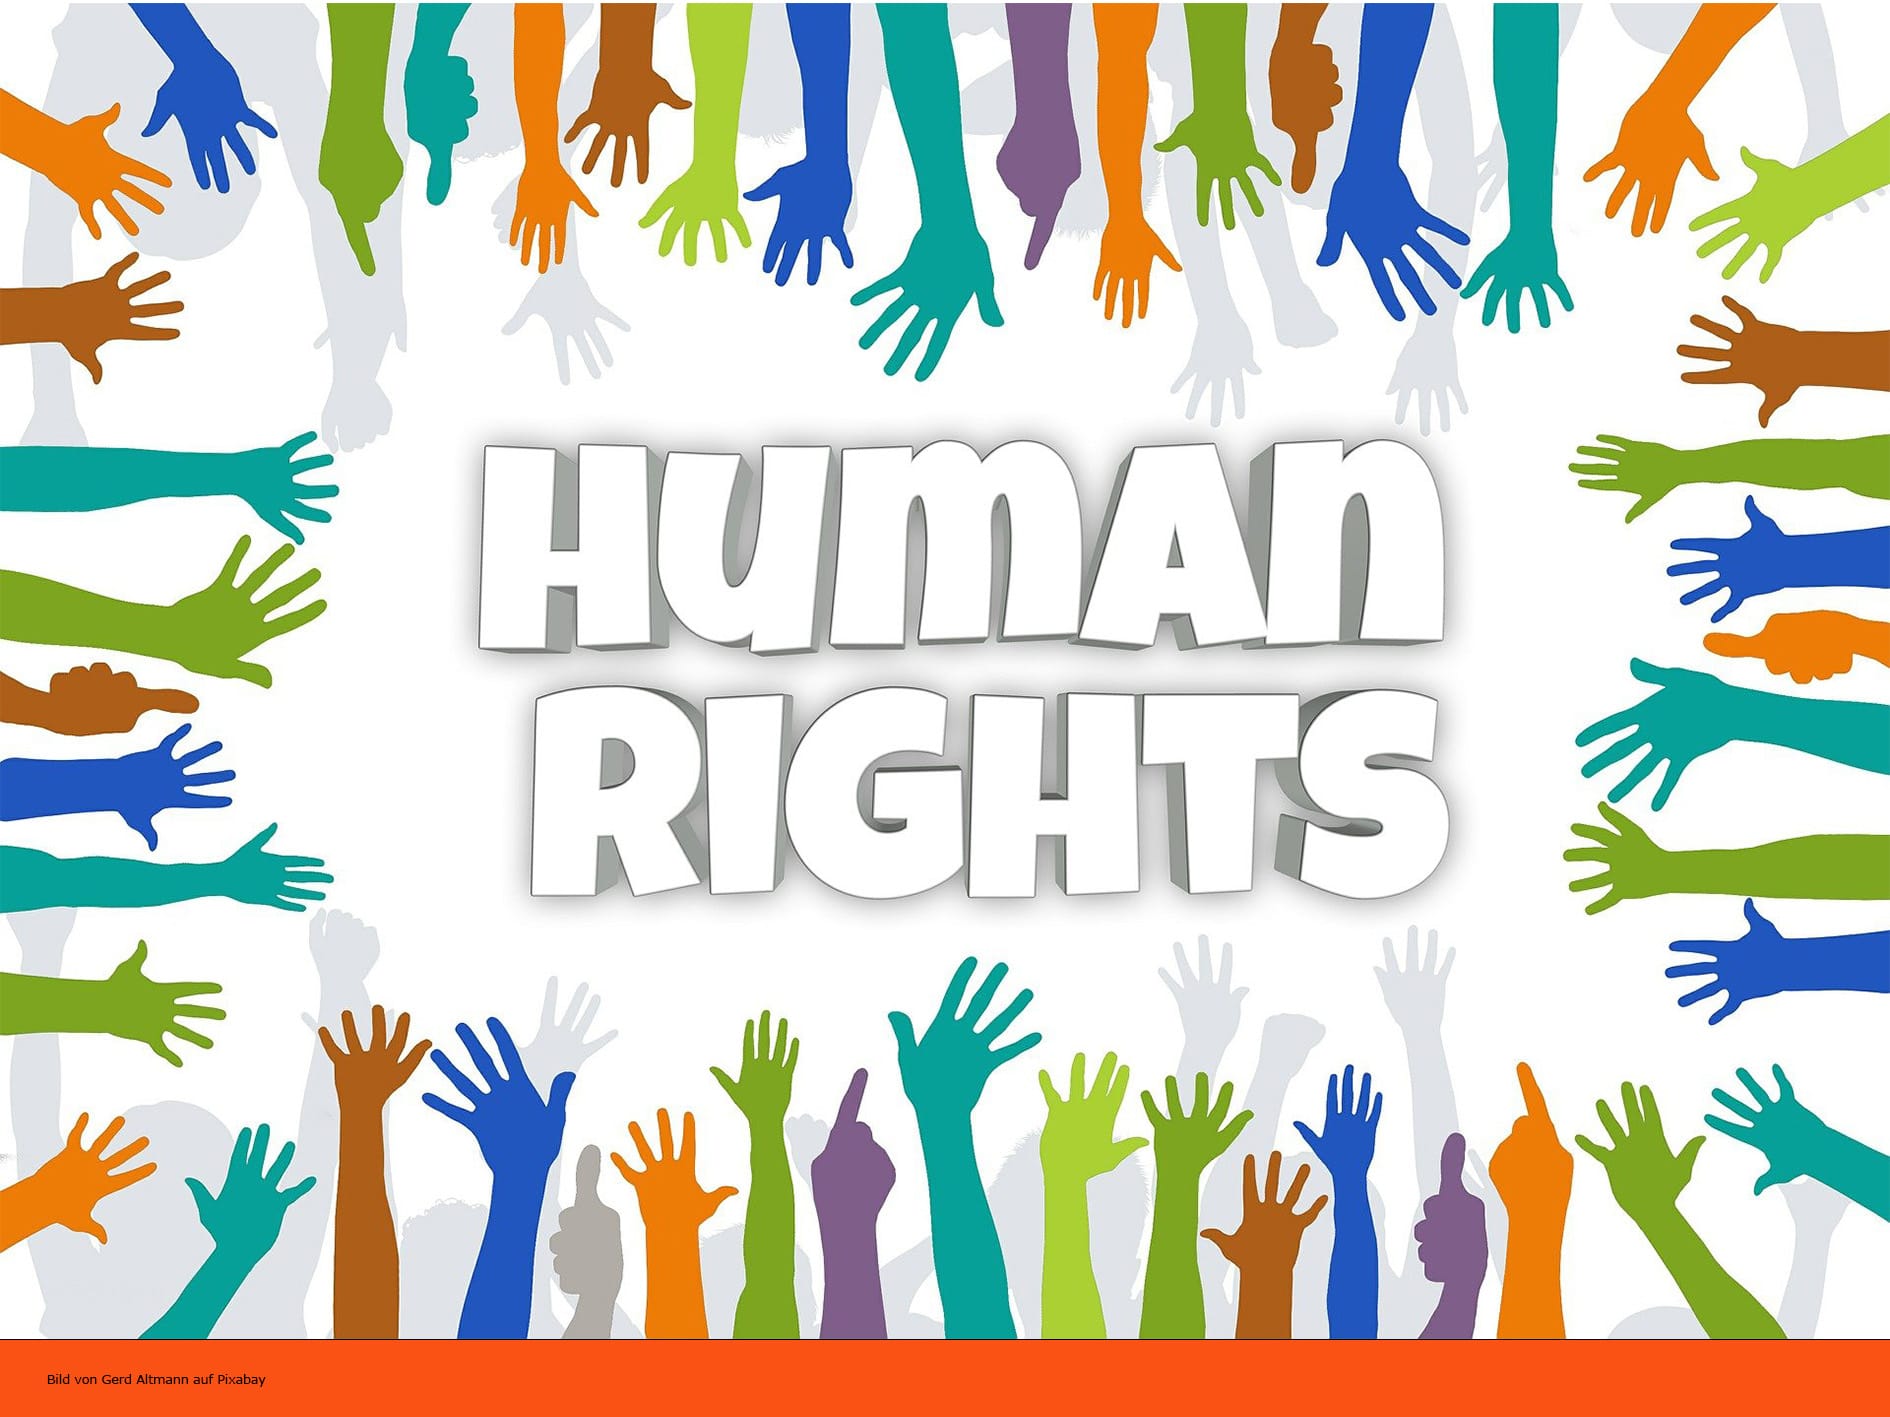 Human Rights Schriftzug, Bild von Gerd Altmann auf Pixabay